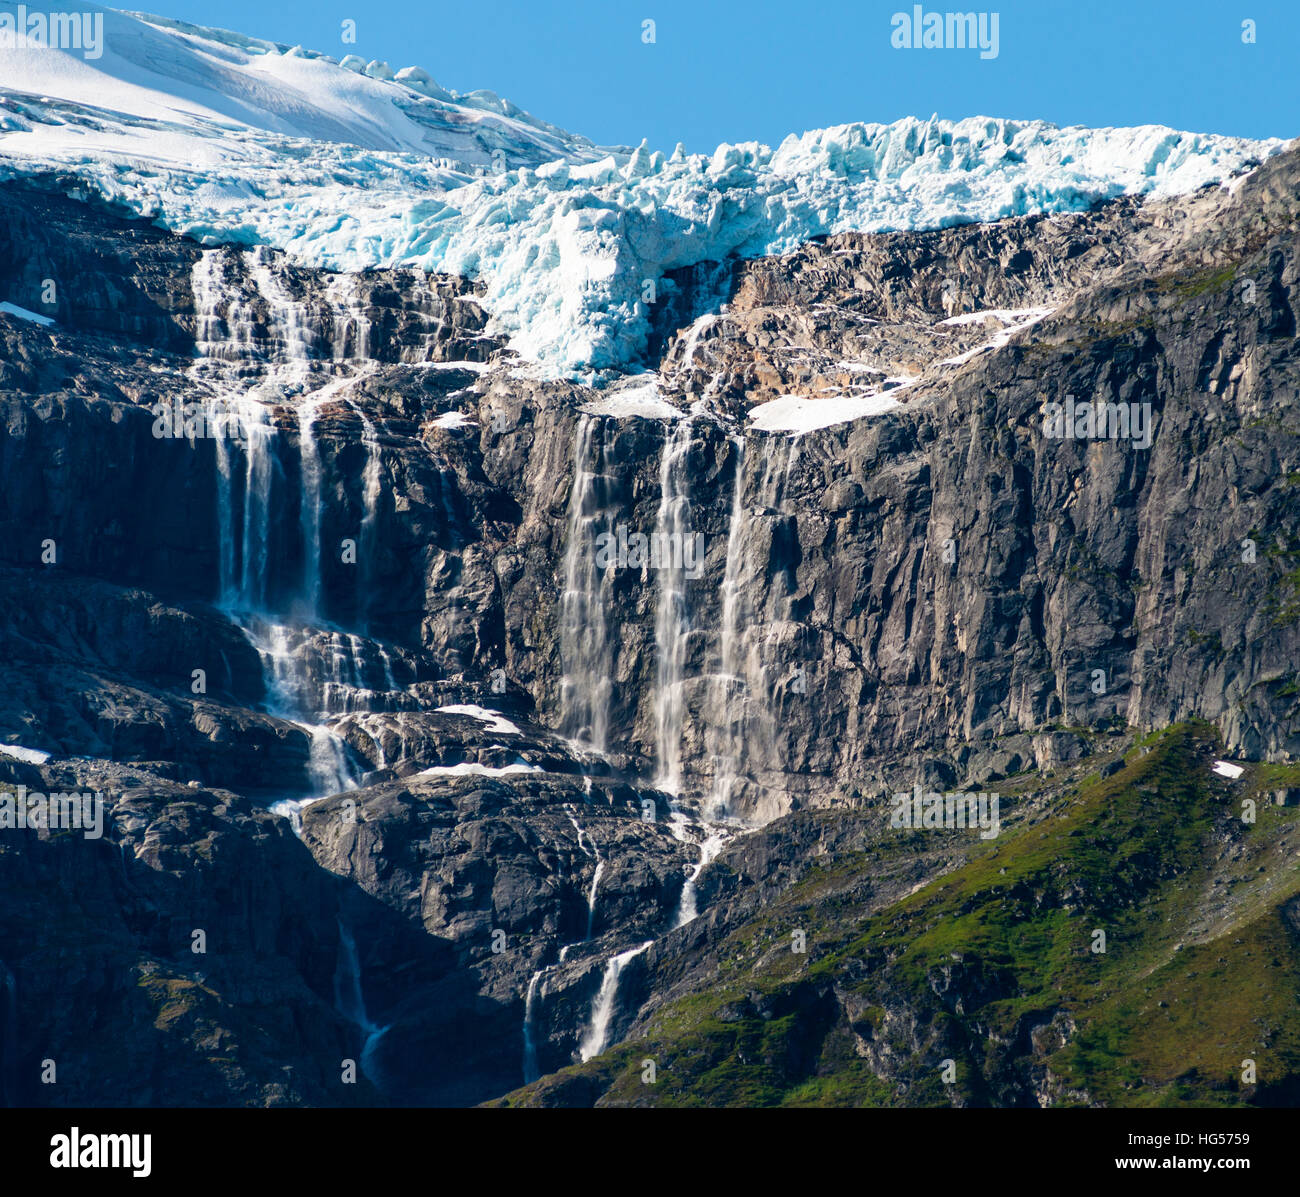 La fonte des glaciers vus de près de Lac Oldevatnet Olden, off fjord, la Norvège. Banque D'Images